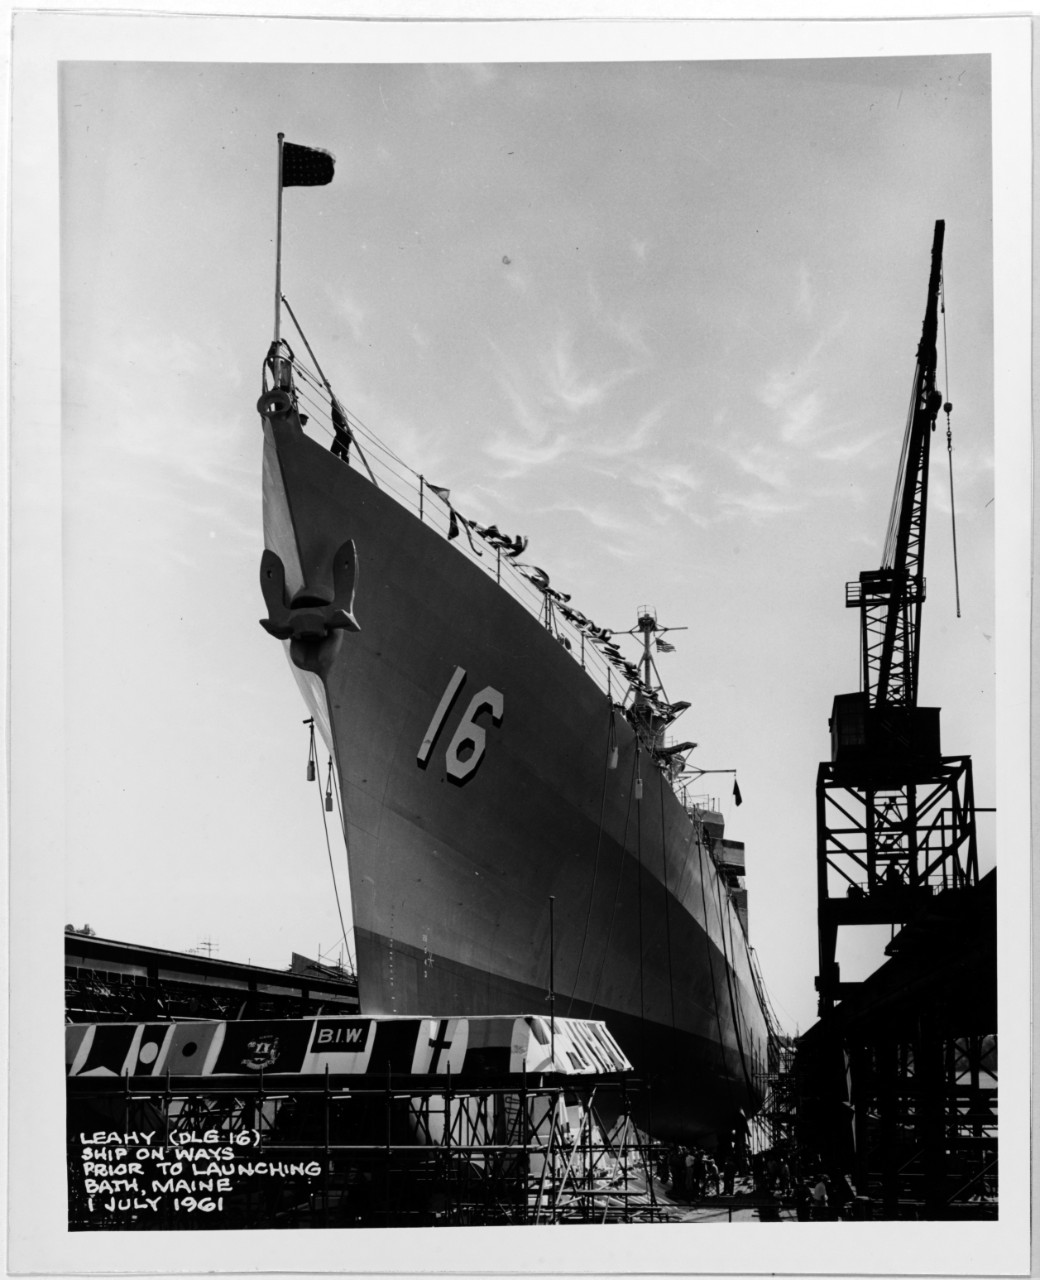 USS LEAHY (DLG-16)